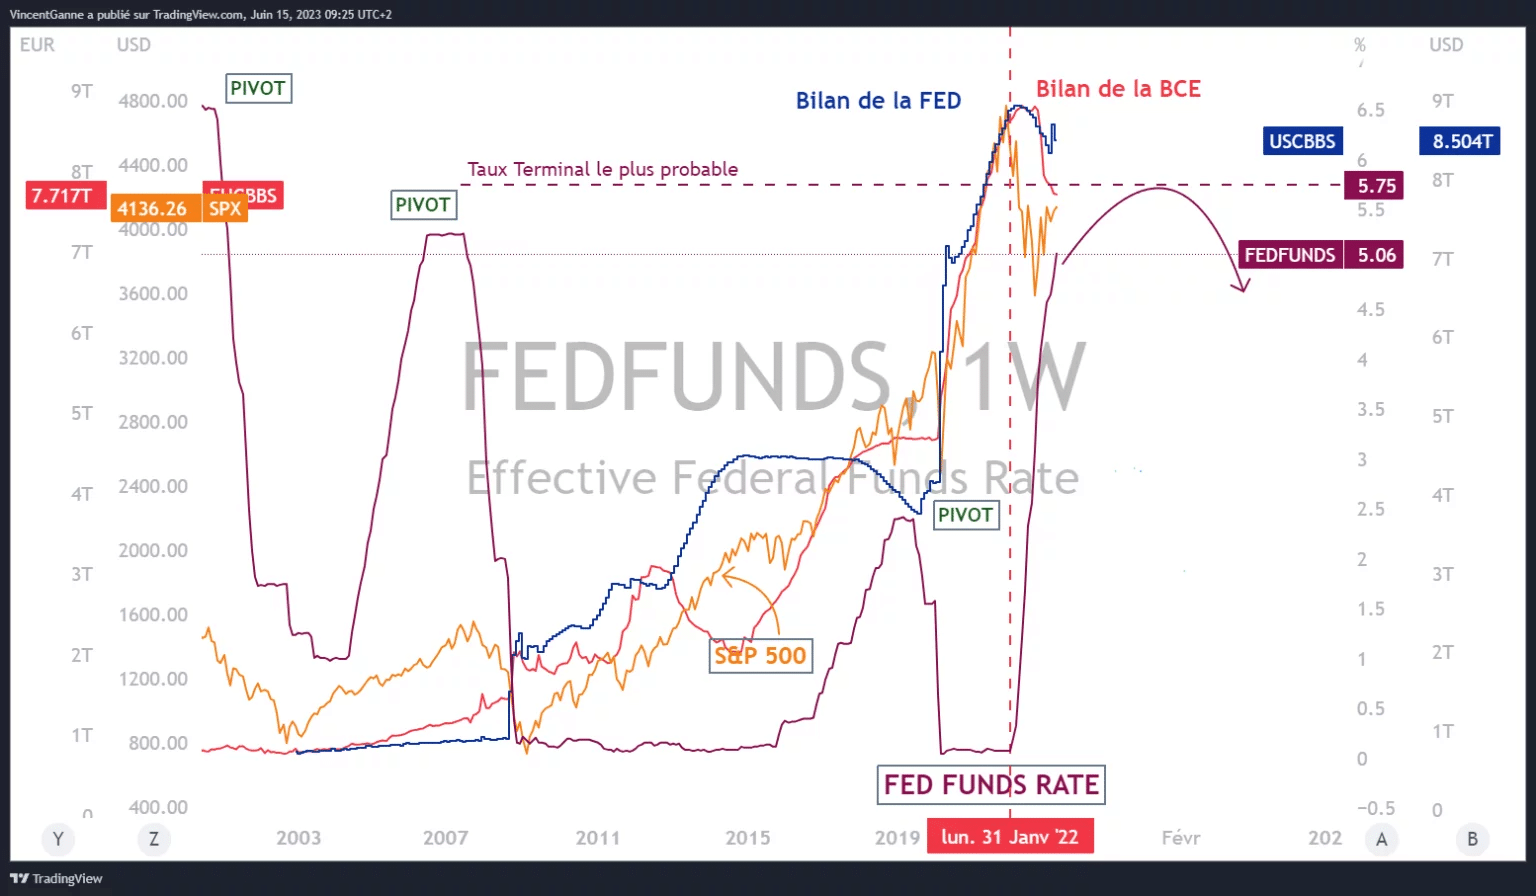 Graf vytvořený pomocí webové stránky TradingView a zobrazující následující informace: úrokovou sazbu fondů FED, nejpravděpodobnější koncovou sazbu FED, rozvahu FED a rozvahu ECB